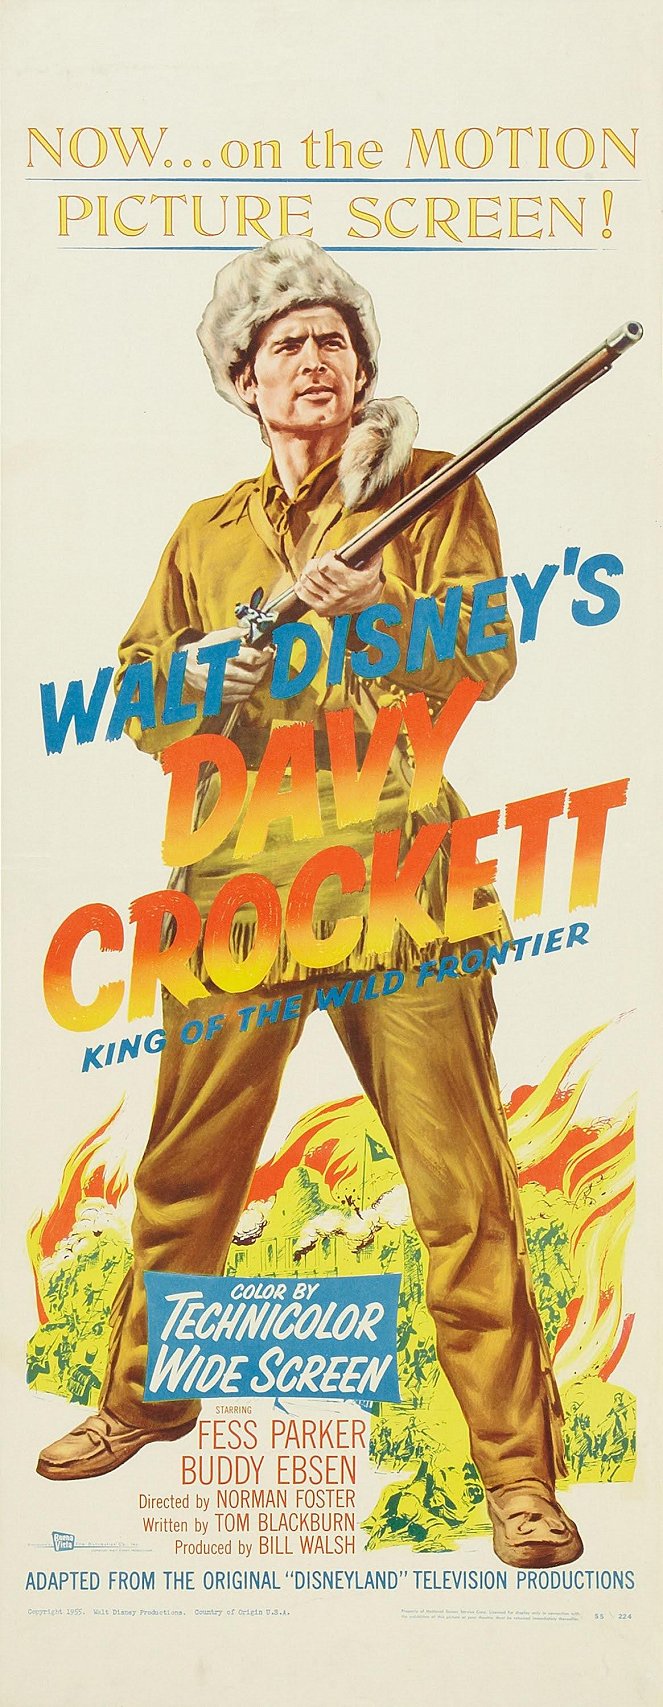 Davy Crockett: Rey de la frontera - Carteles